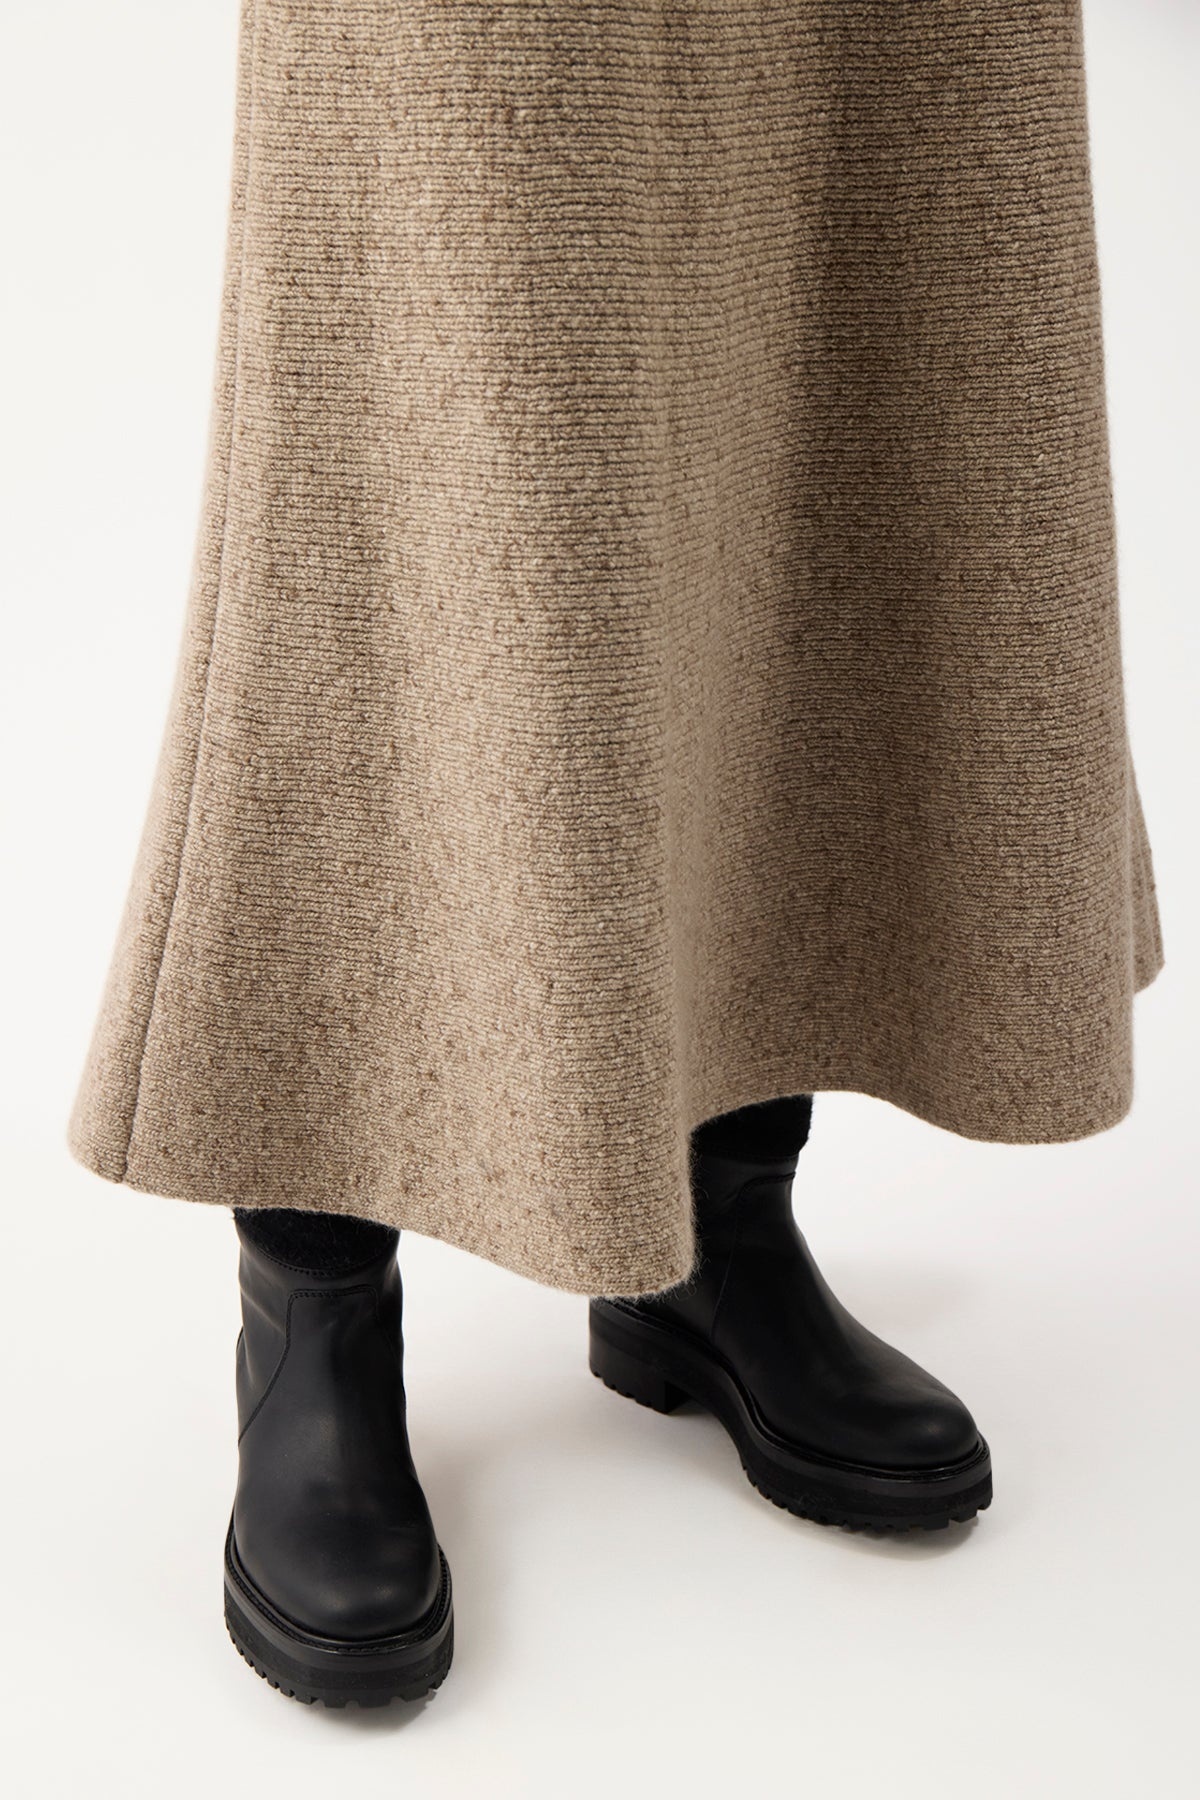 Eden Skirt in Aran Cashmere - 5